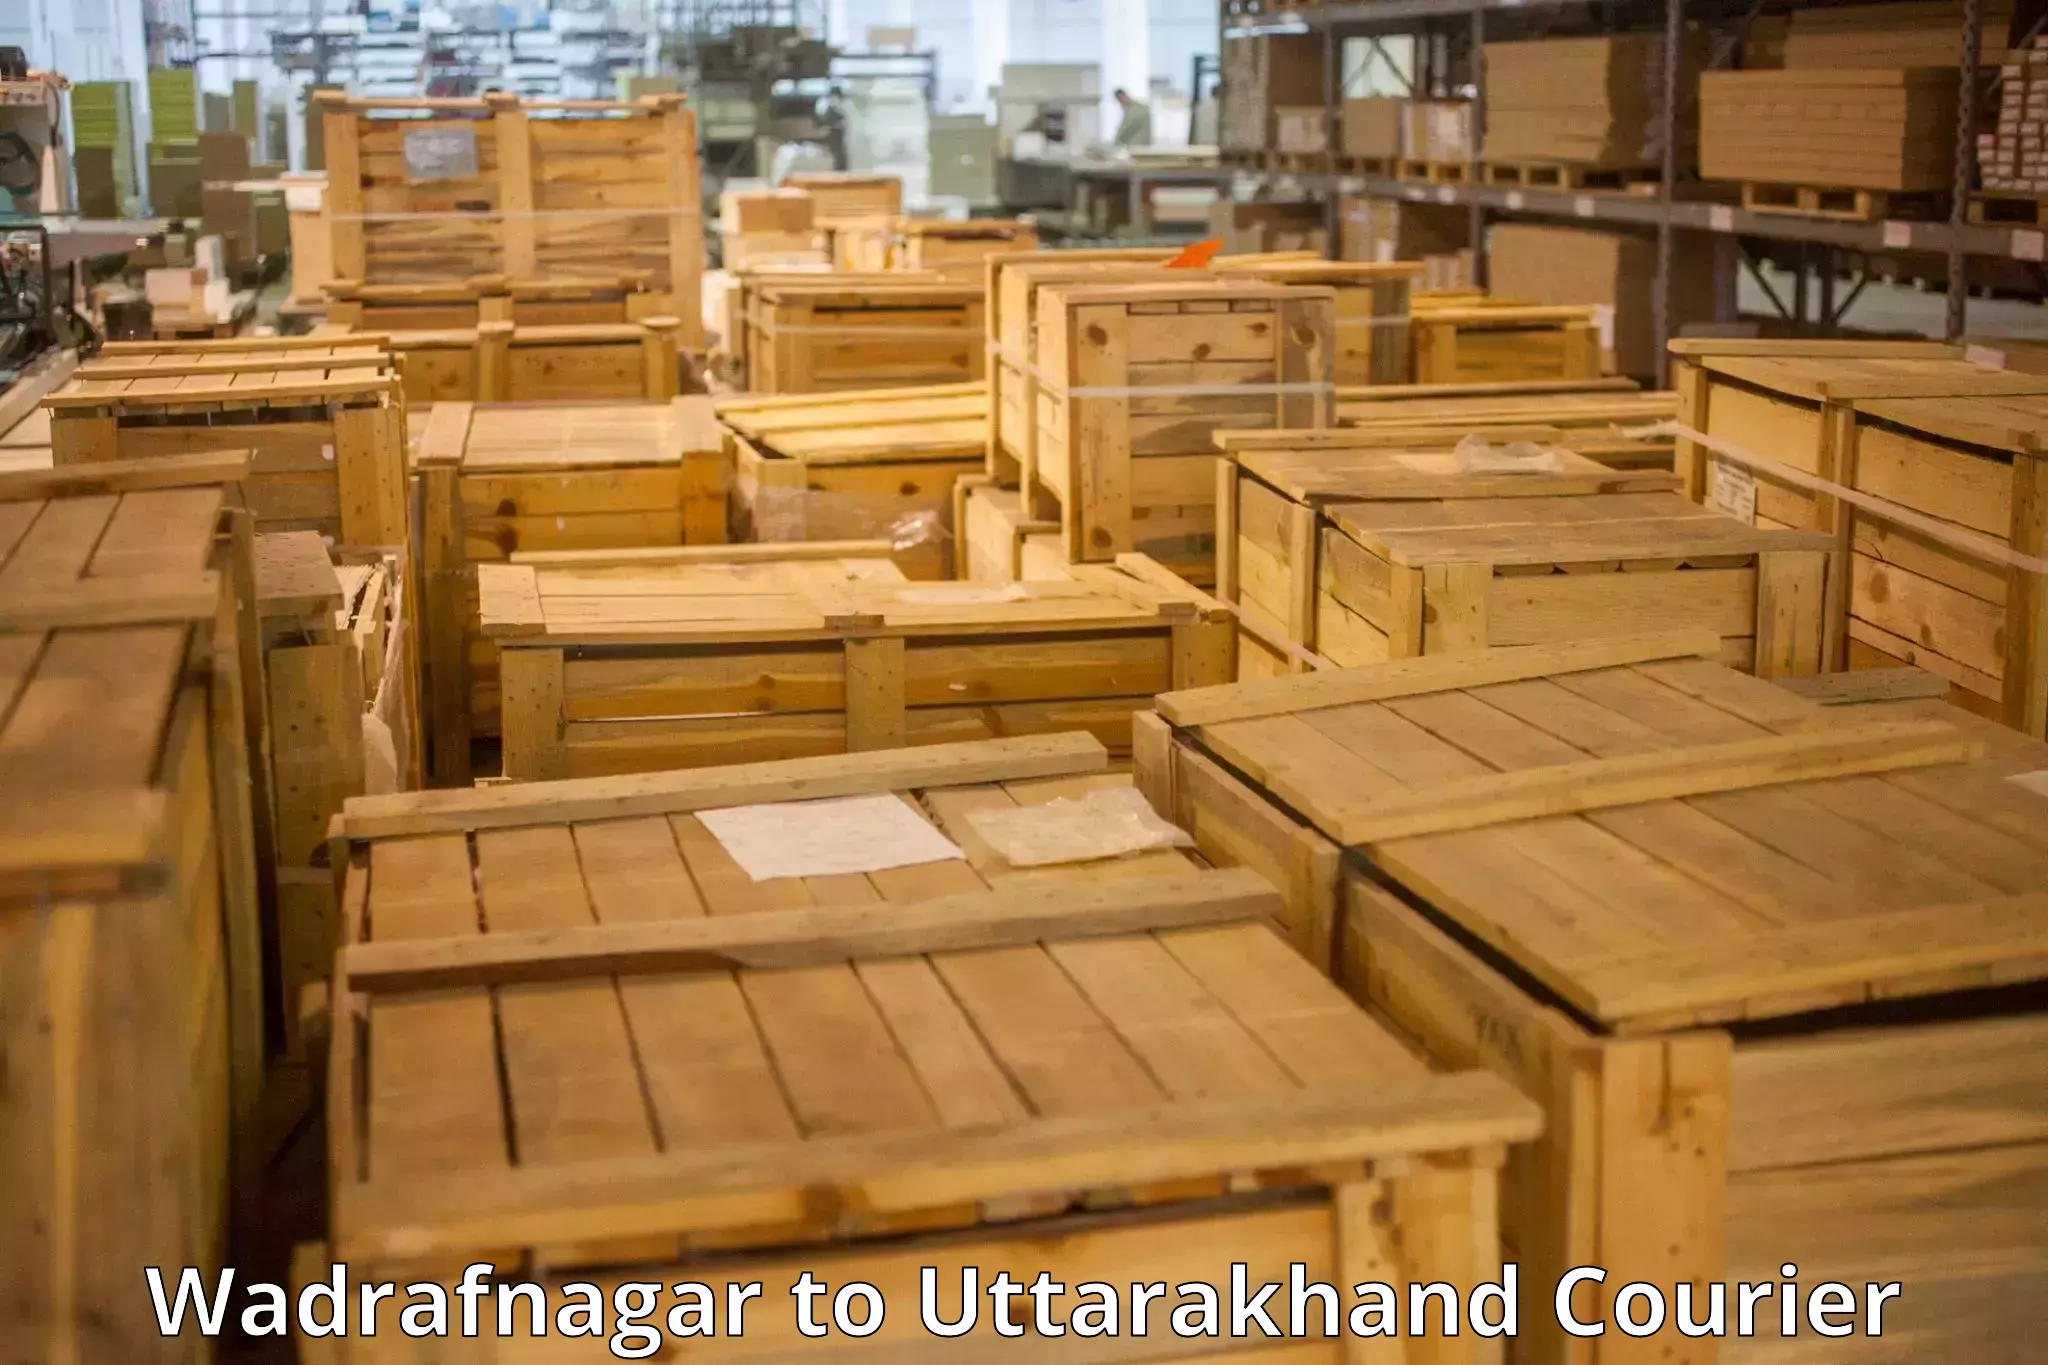 Comprehensive baggage service Wadrafnagar to Ranikhet